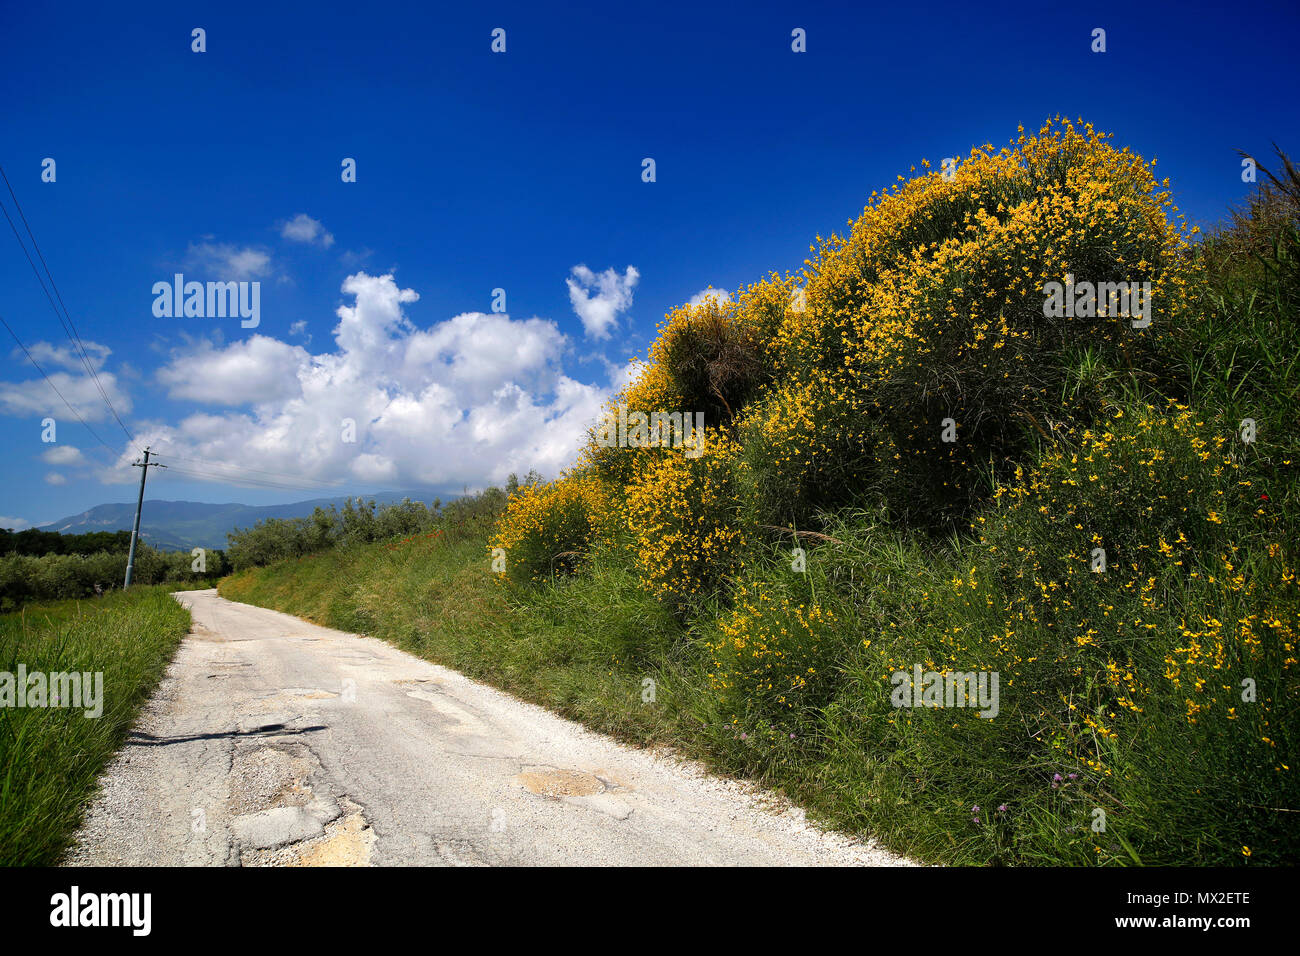 San Vincenzo, Italia. Strada ginestre selvatiche contro un cielo blu con nuvole. Foto Stock